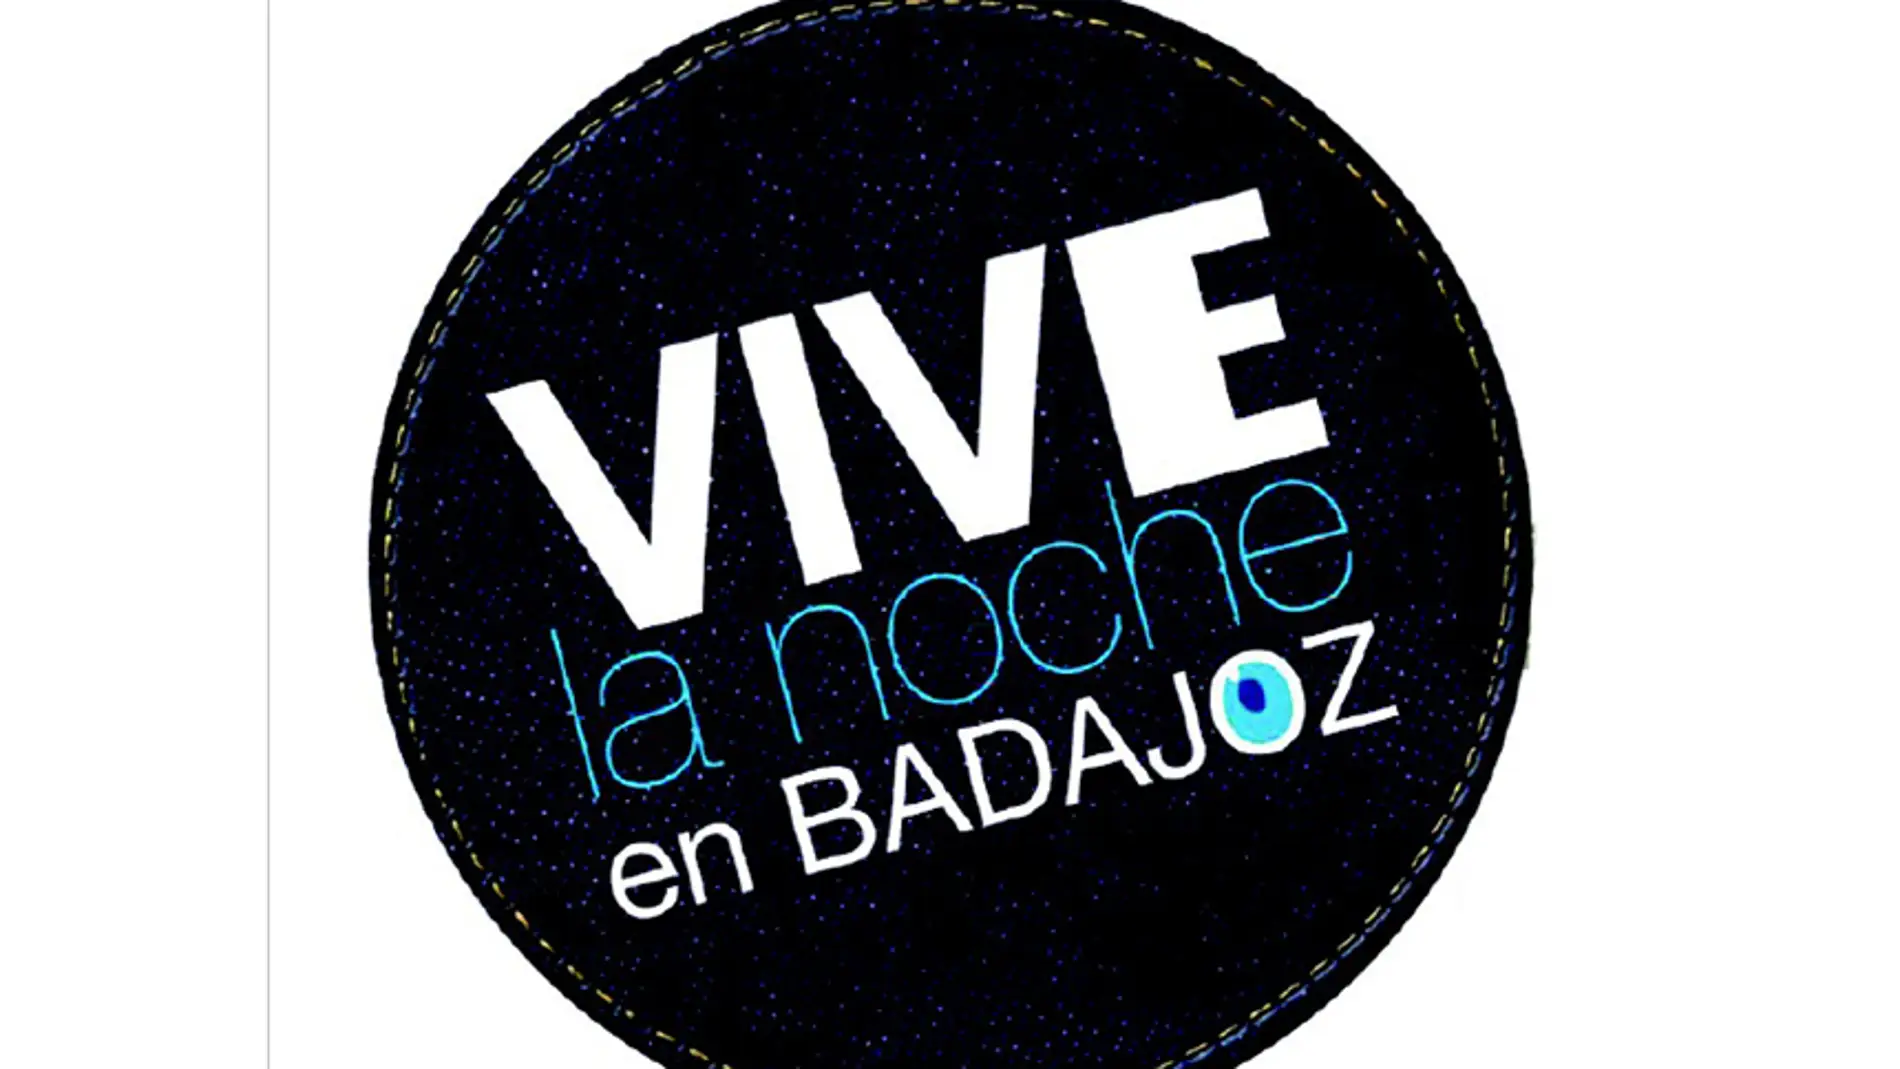 El programa 'Vive la Noche en Badajoz 2021' del Ayuntamiento de Badajoz se celebrará de mayo a septiembre